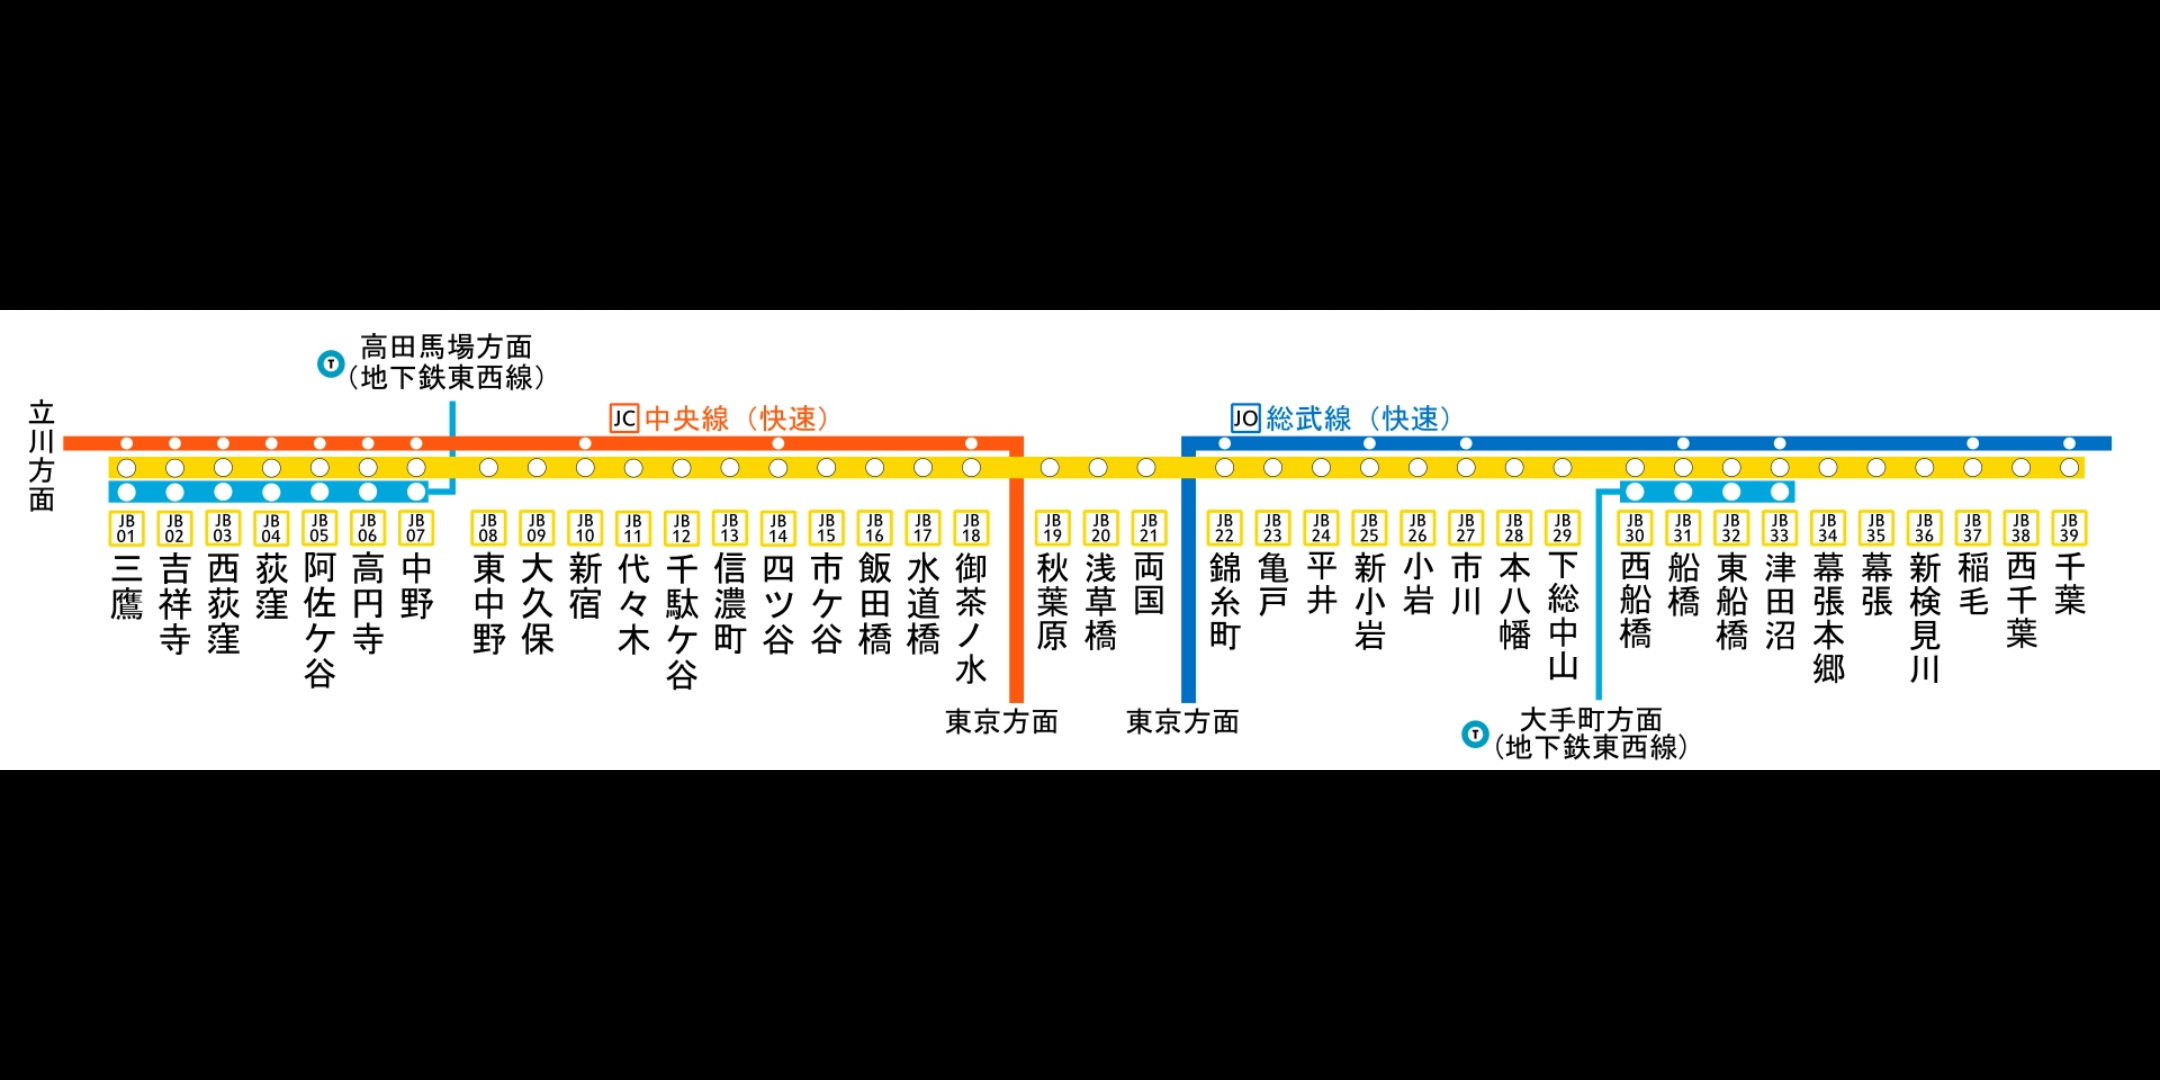 日本总武线线路图图片